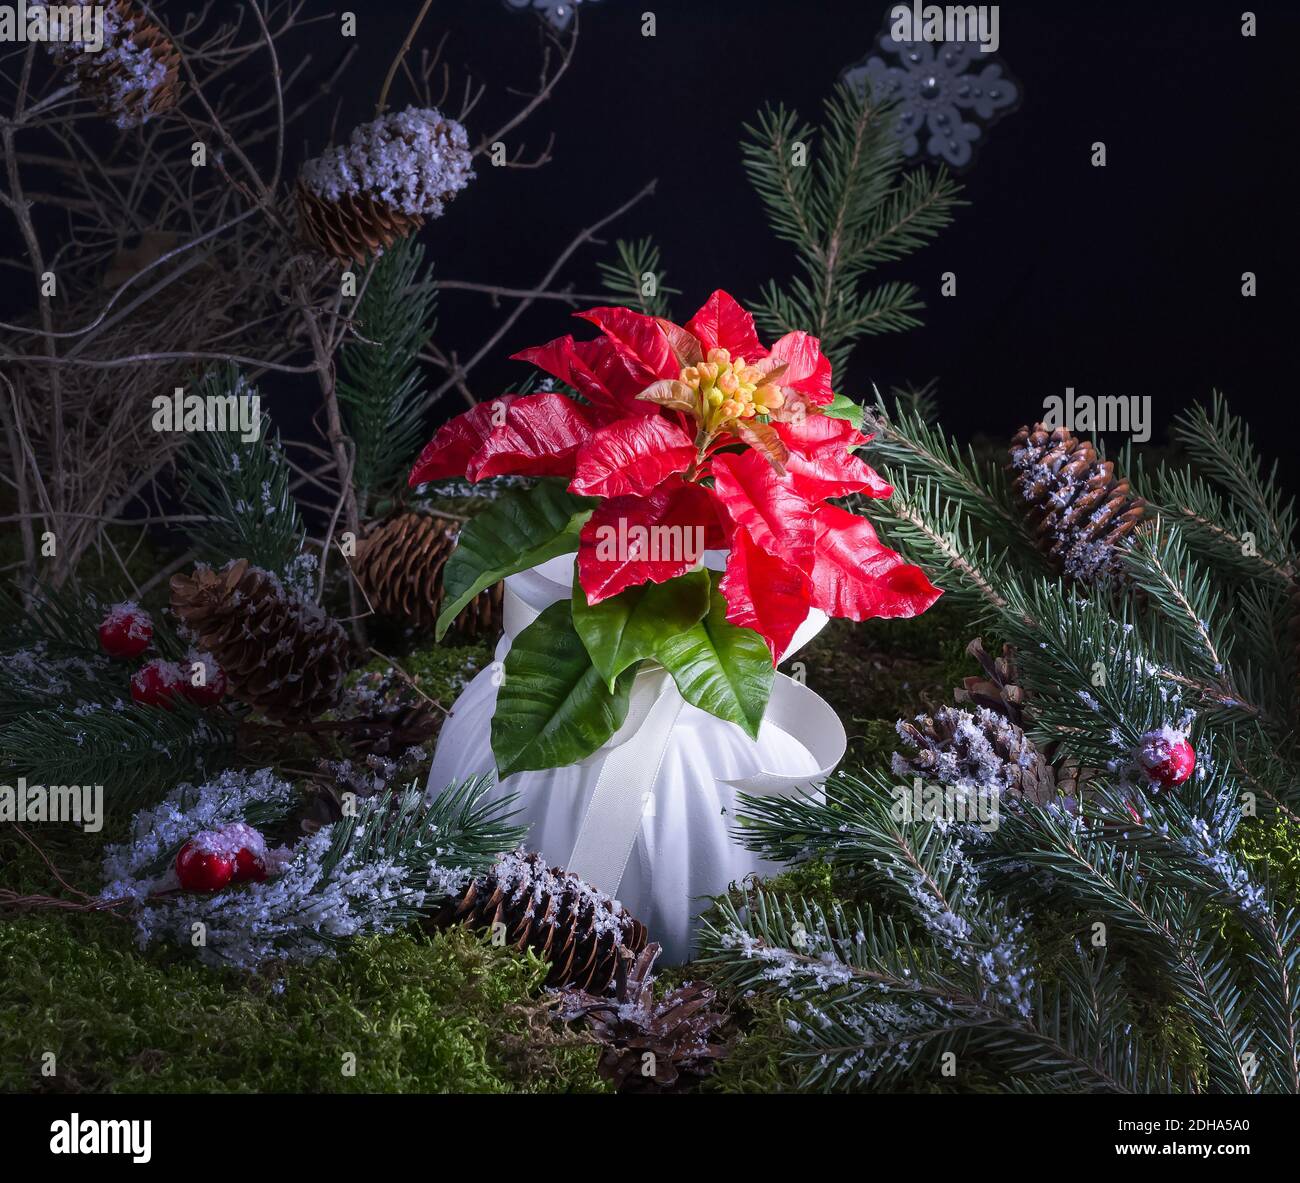 Weihnachten Heimtextilien - Anordnung der Weihnachtssterne Blume auf natürlichem Moos Hintergrund, Heimtextilien Idee Stockfoto